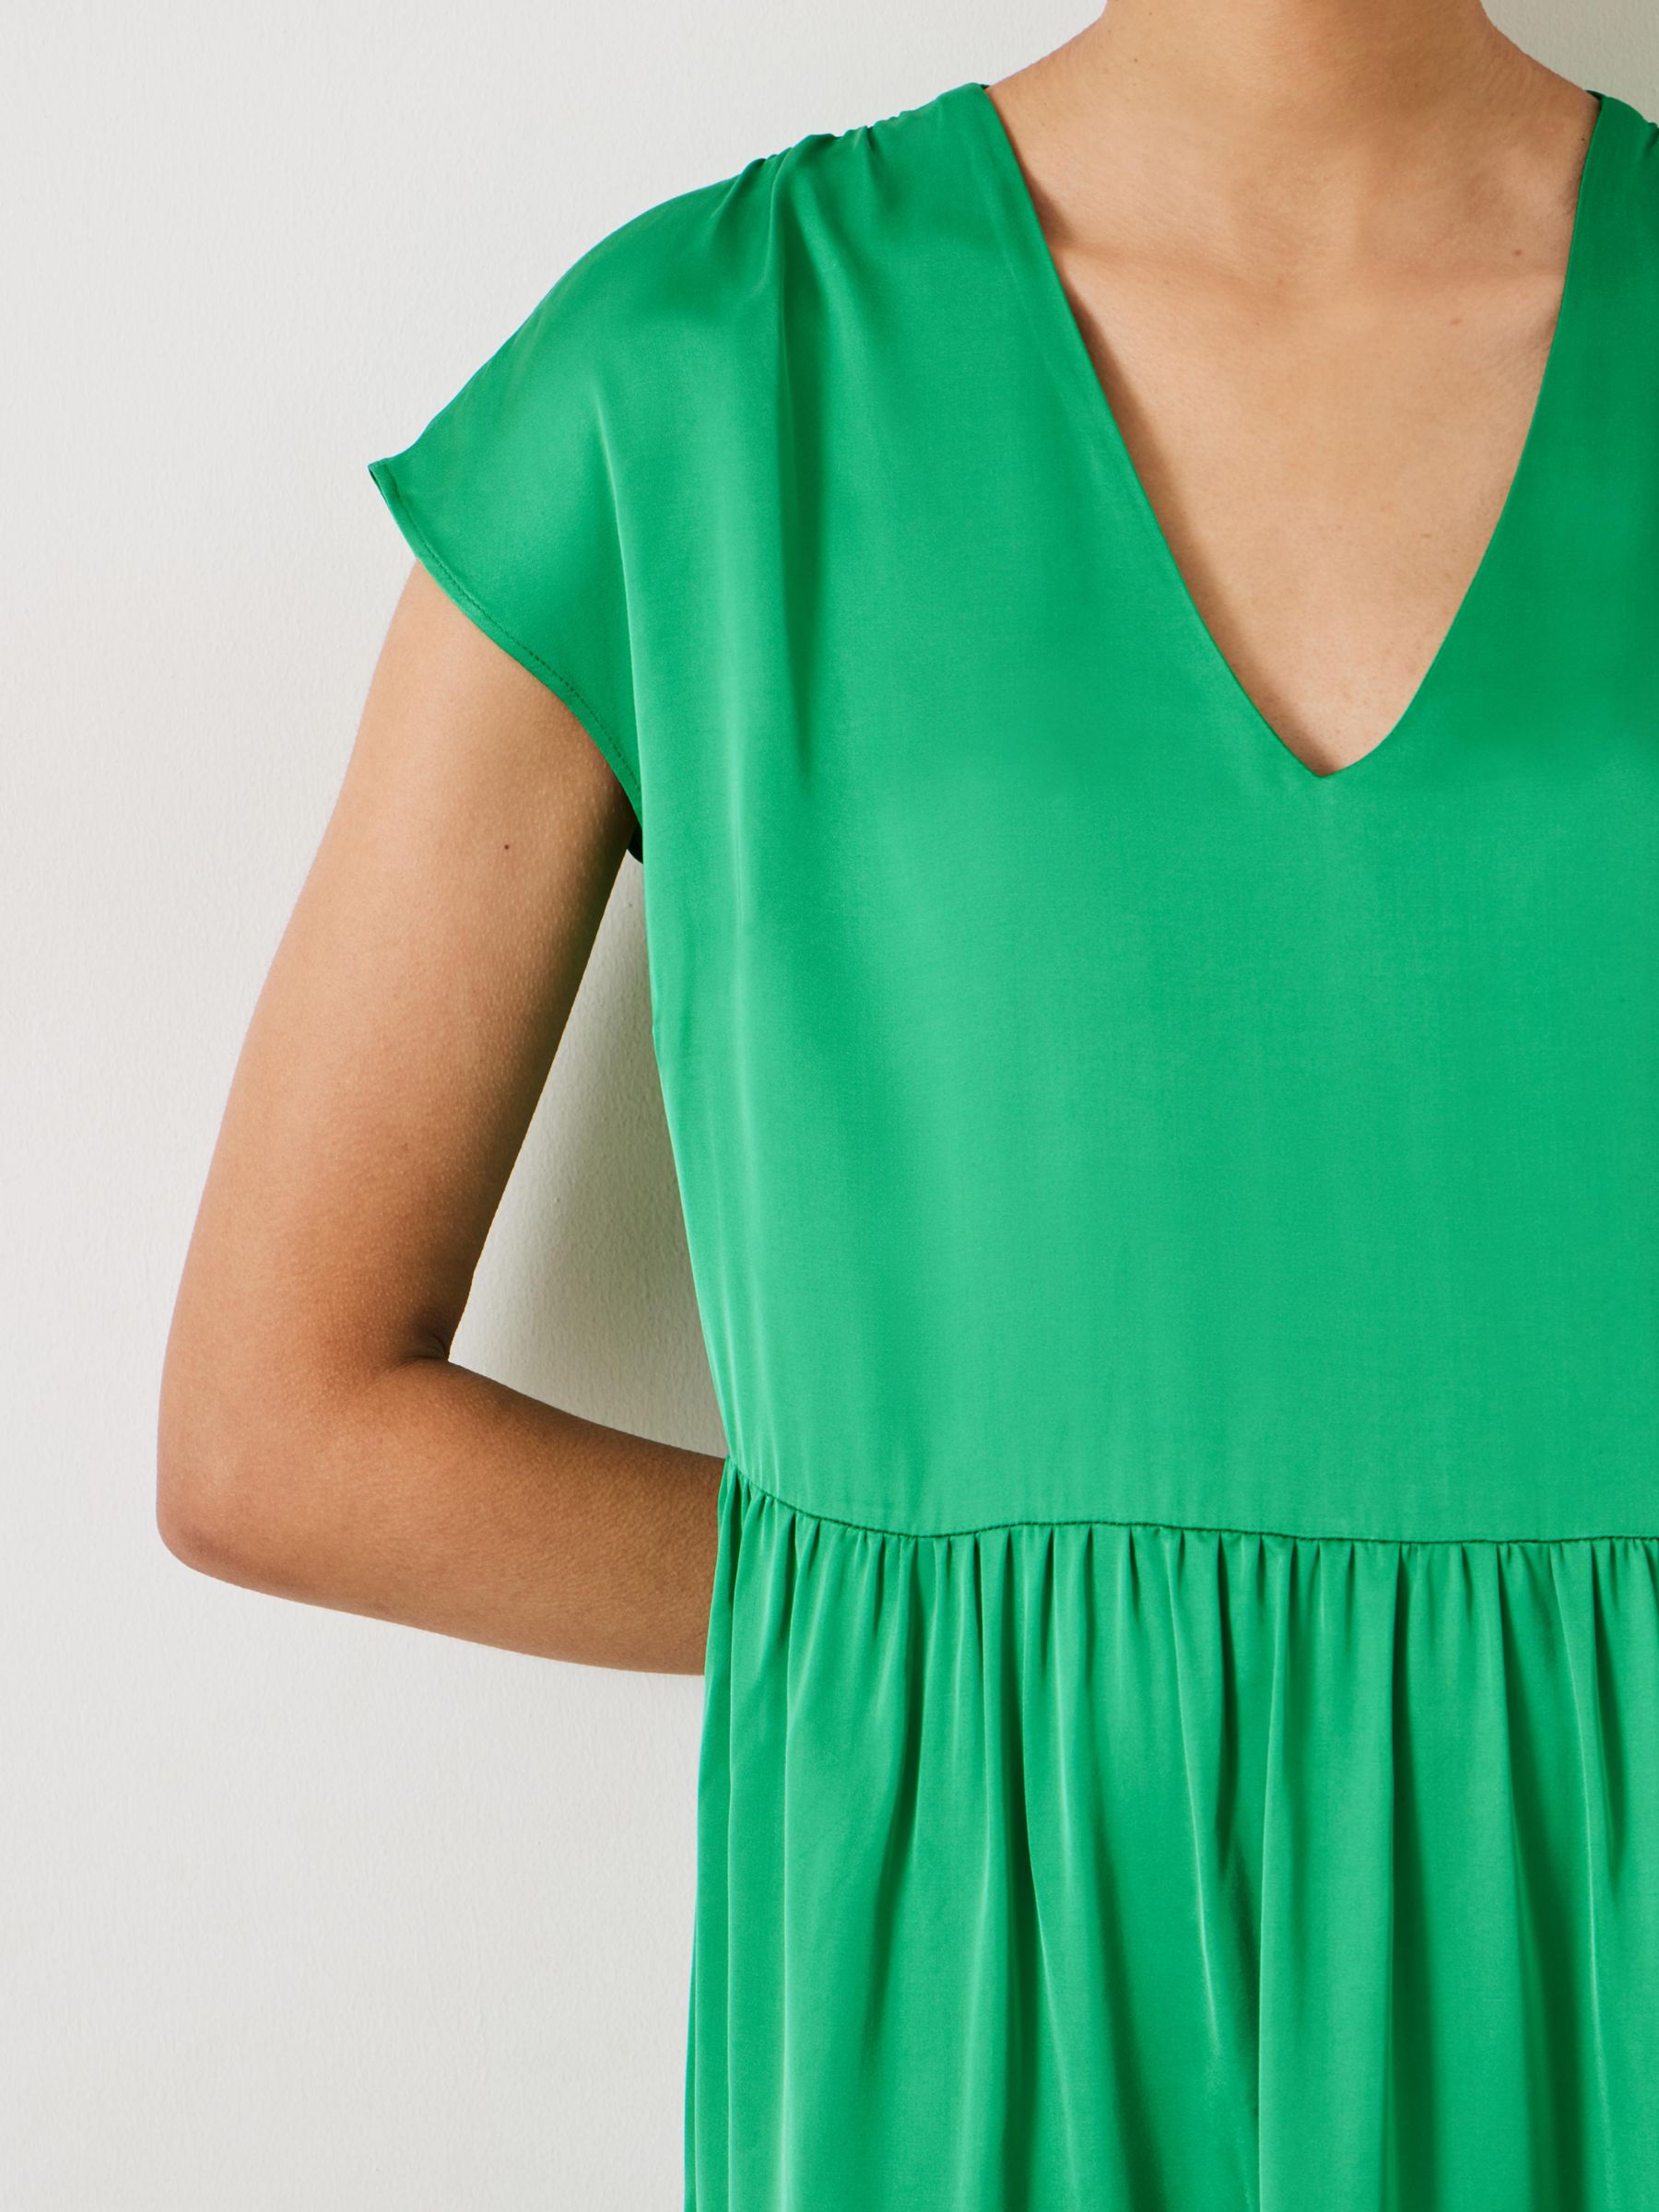 HUSH Lily Satin Tiered Mini Dress, Green, 10